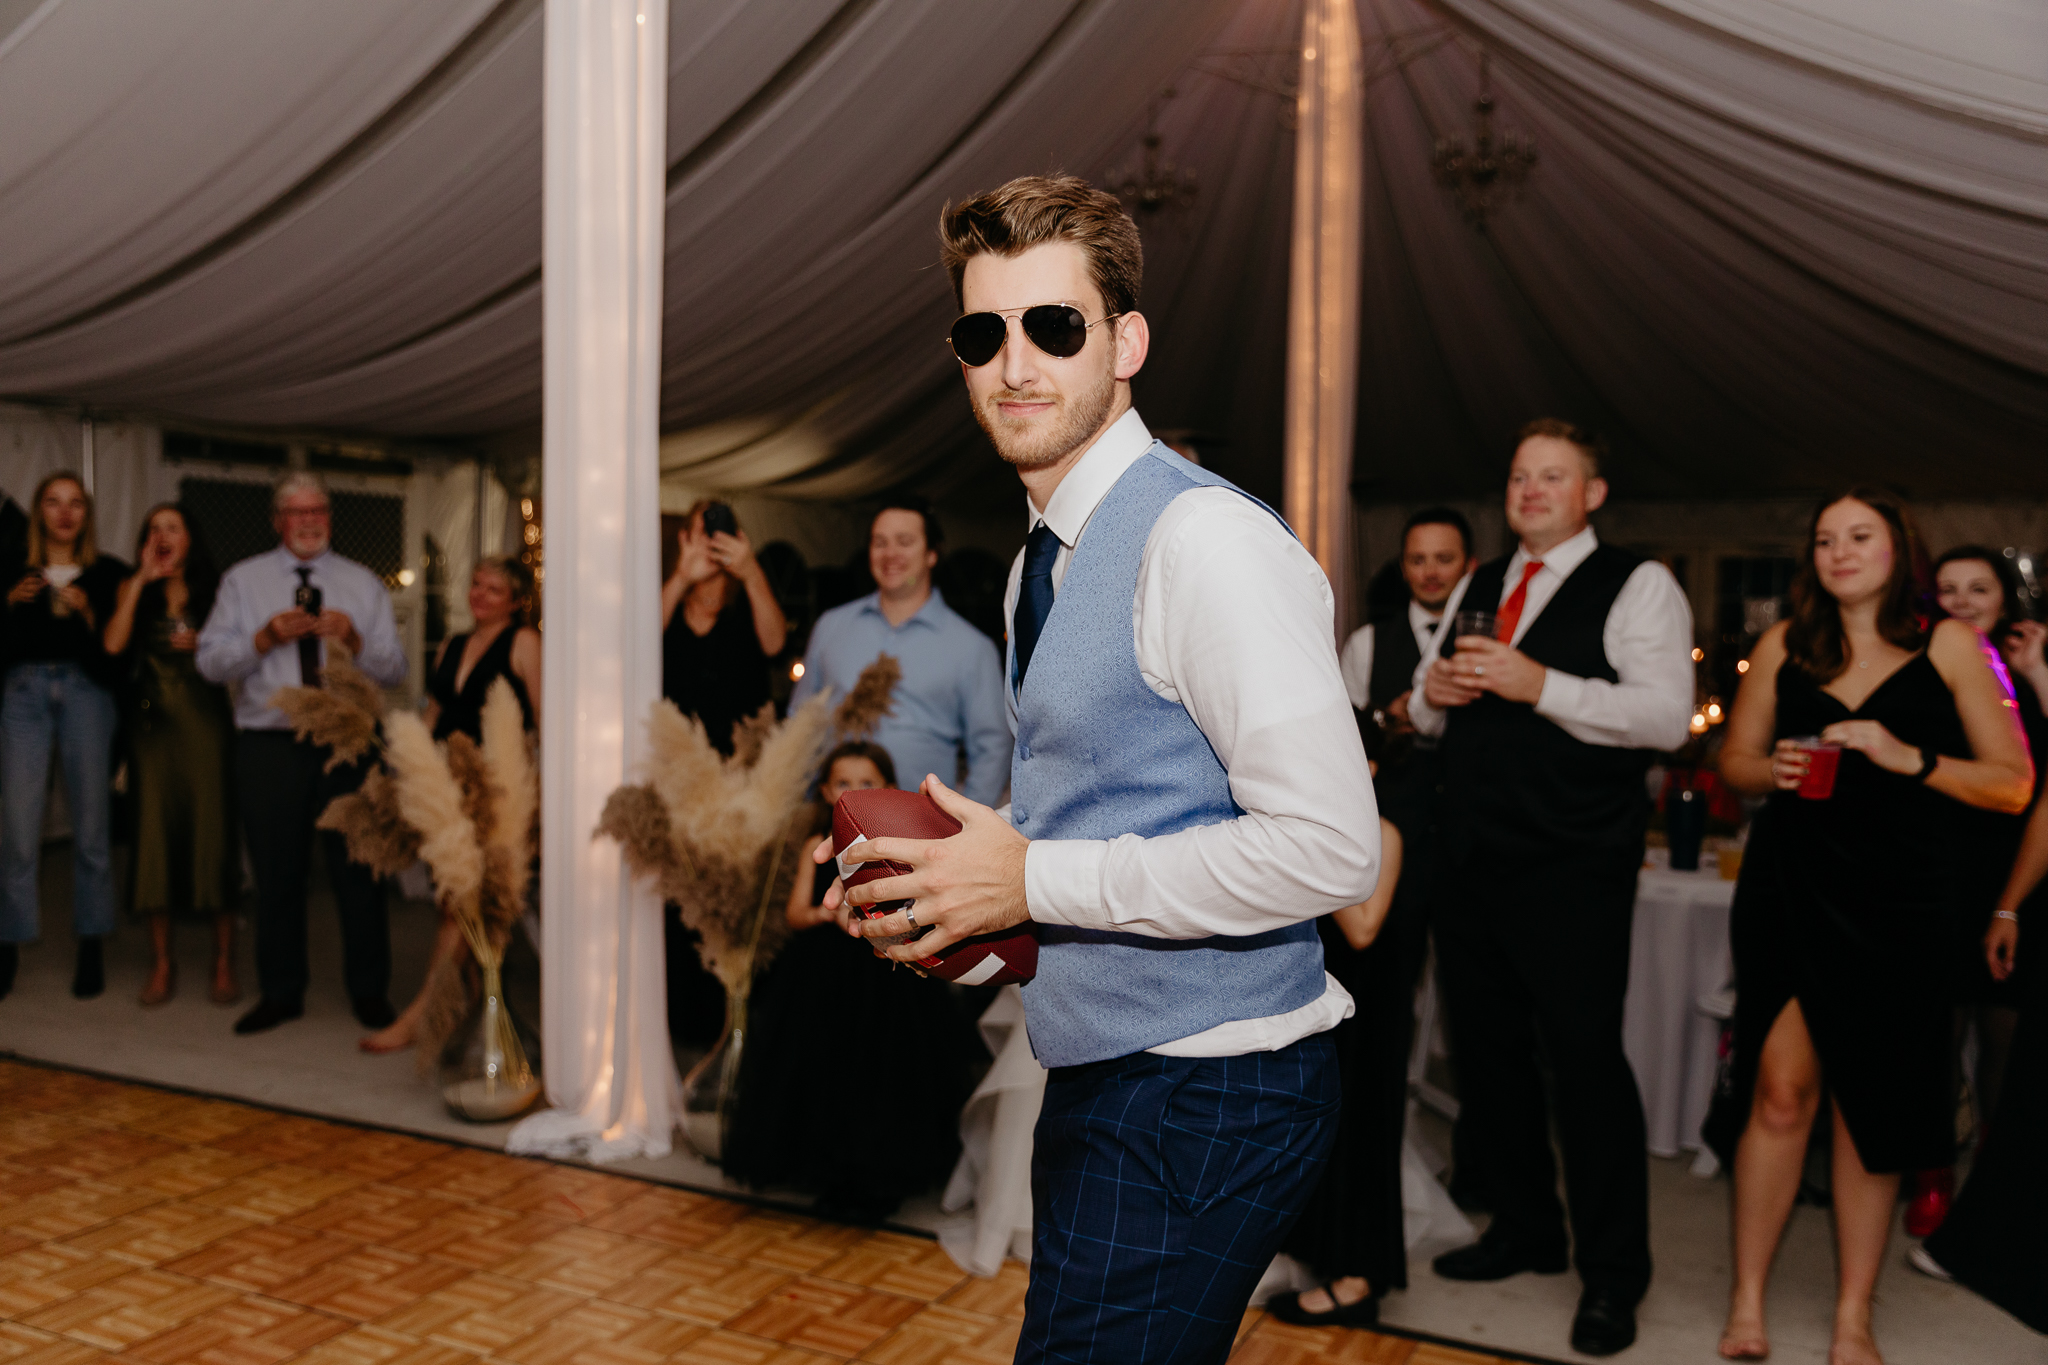 Groom tosses garter on football to all the single men on the dance floor